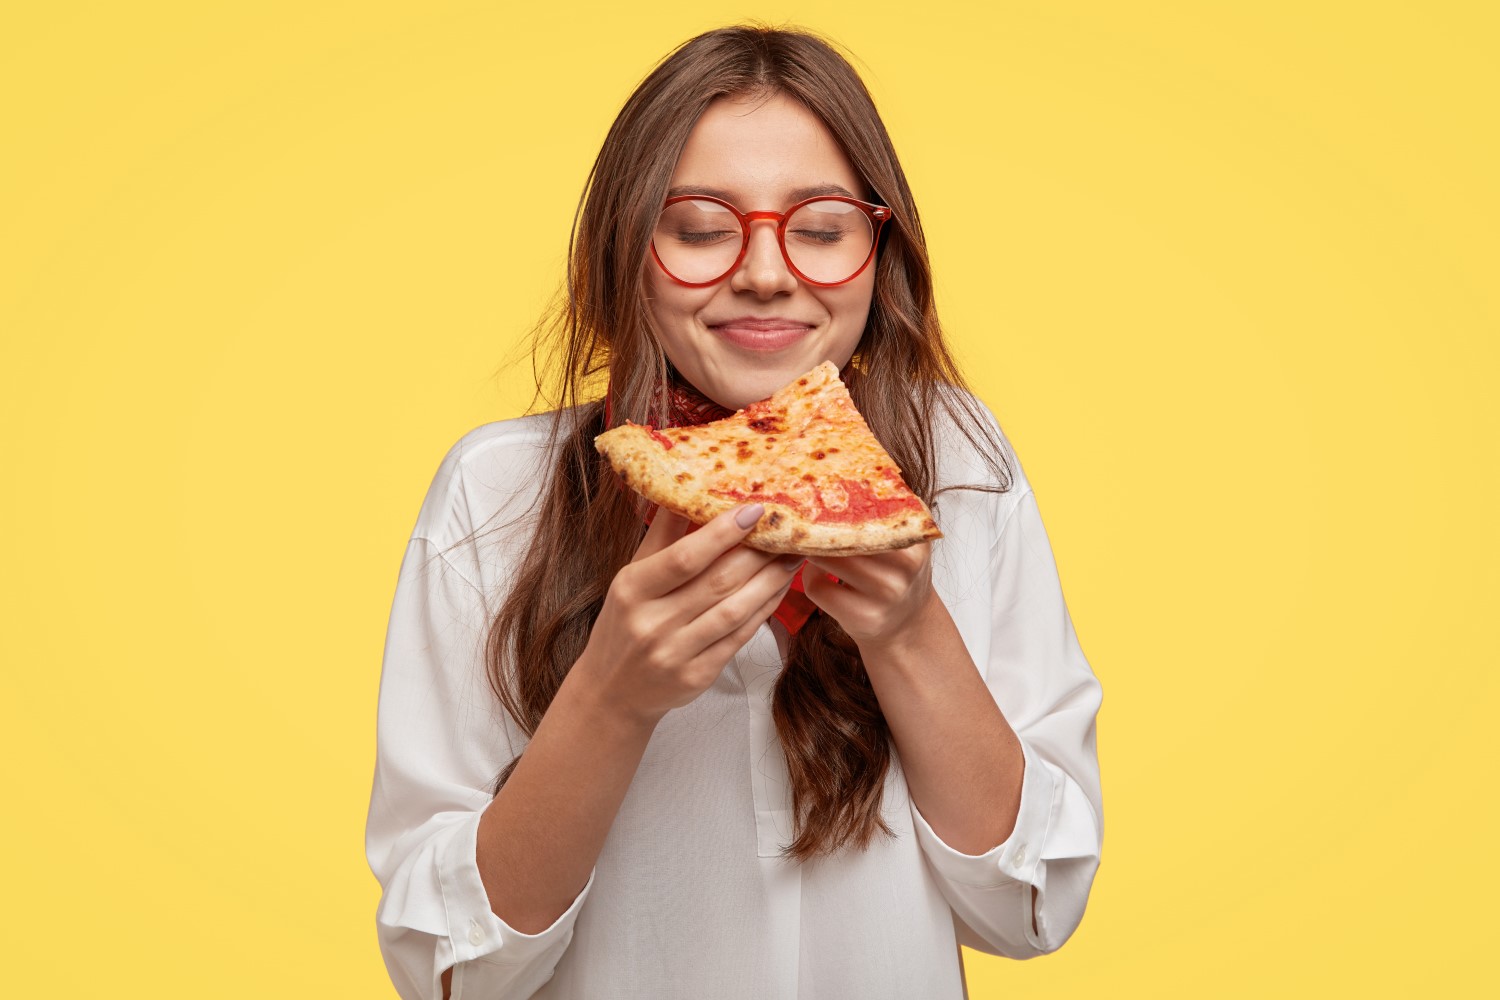 Mulher jovem come um pedaço de pizza.